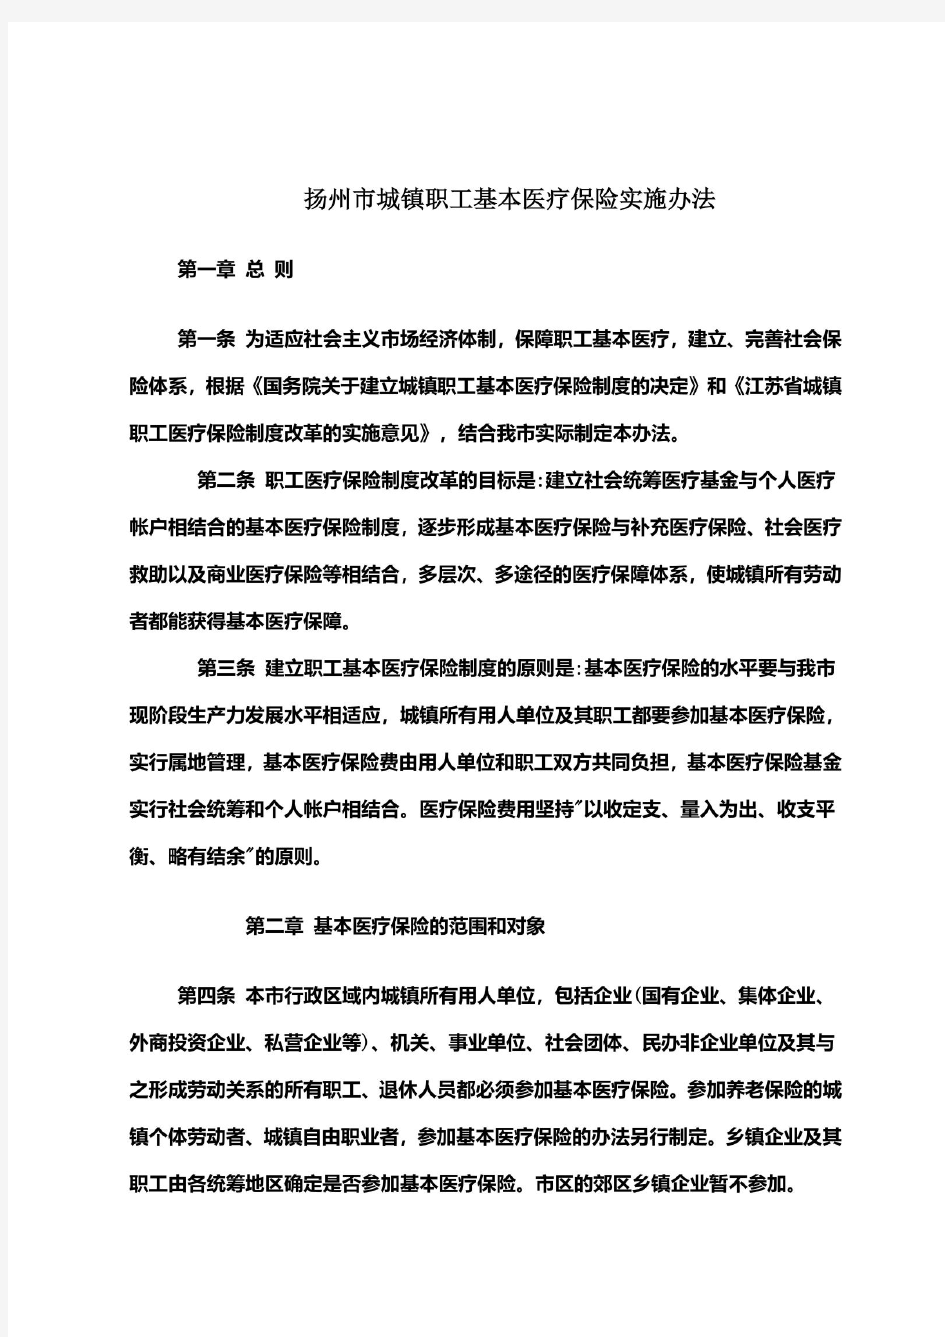 扬州市城镇职工基本医疗保险实施办法